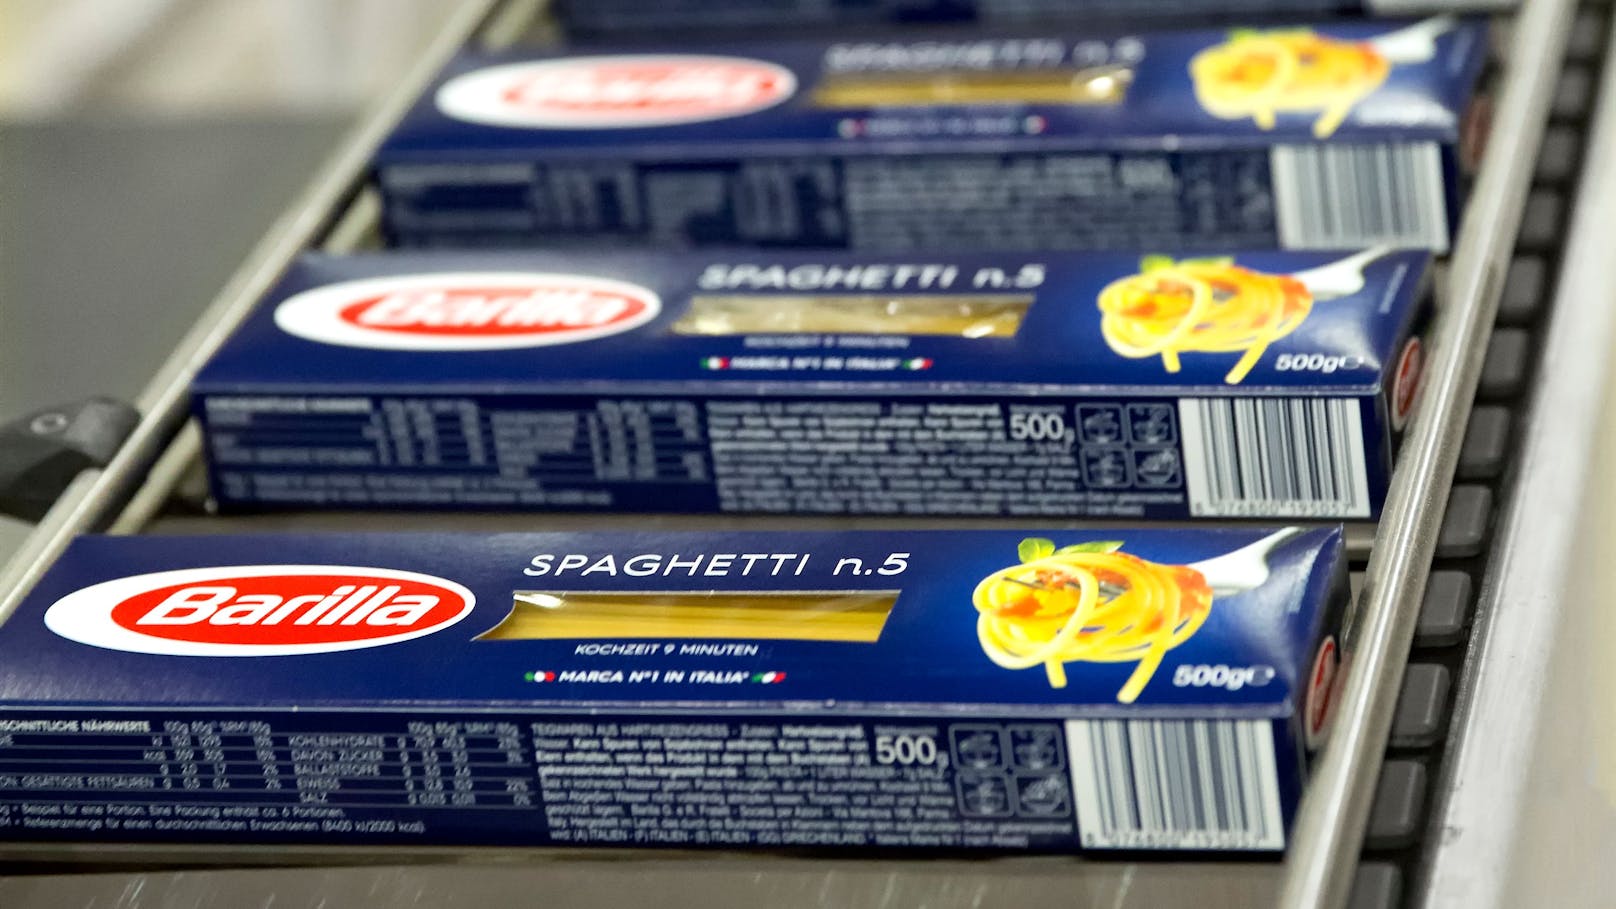 Nach neun Minuten sind die Spaghetti Nr.5 von Barilla in allen Ländern "al dente".